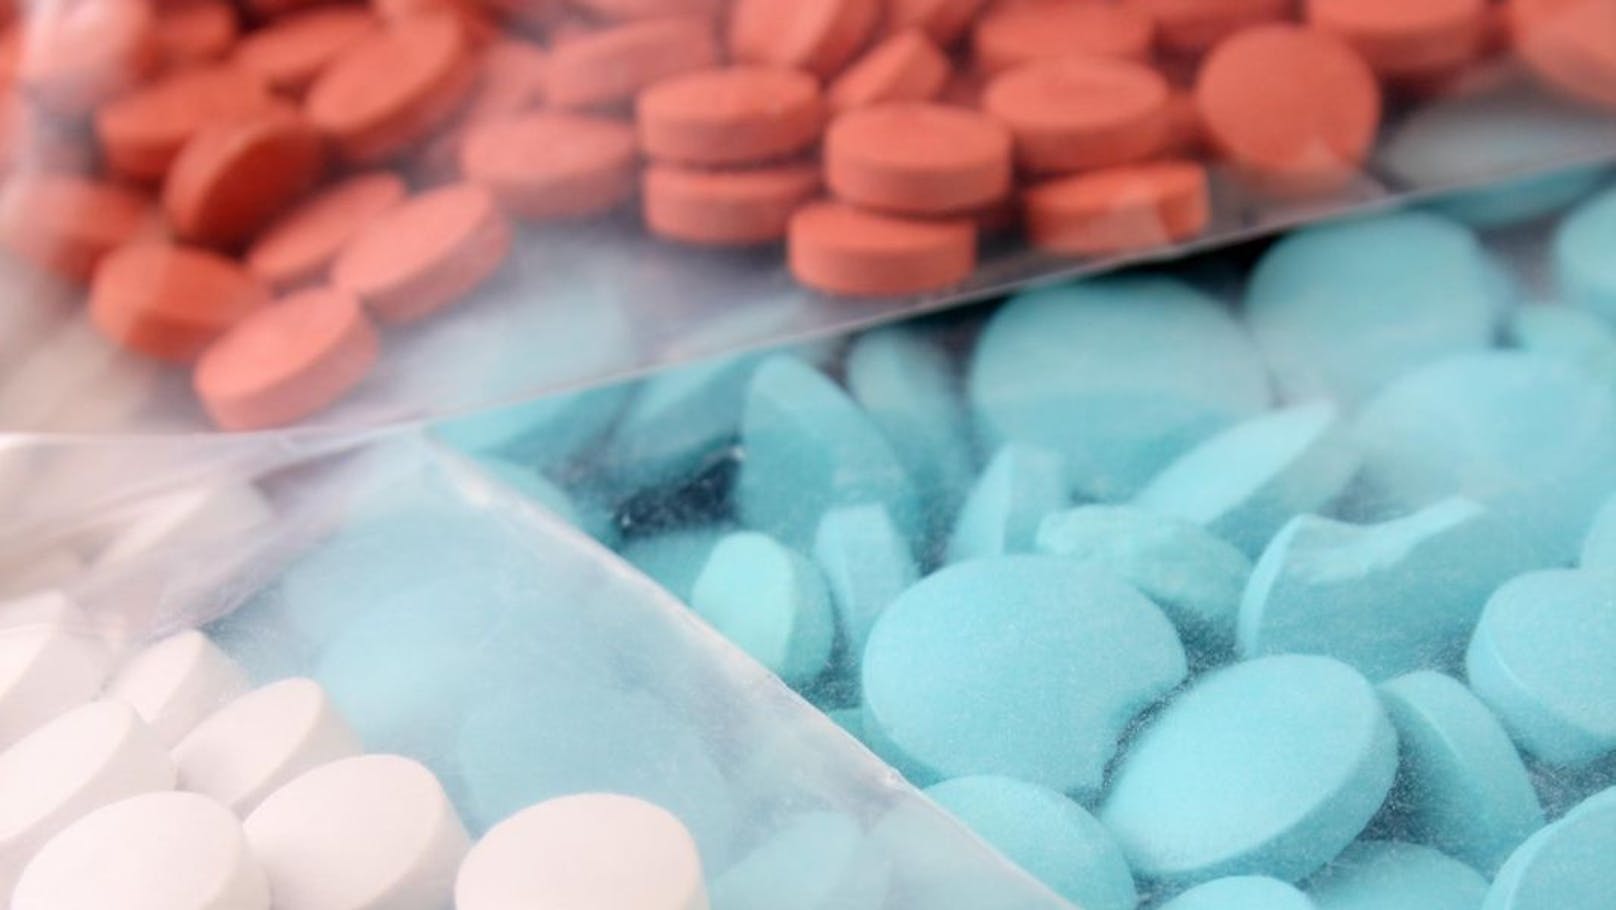 Ein Brite hat zwischen dem Alter von 21 und 30 Jahren ca. 40.000 Pillen Ecstasy konsumiert.